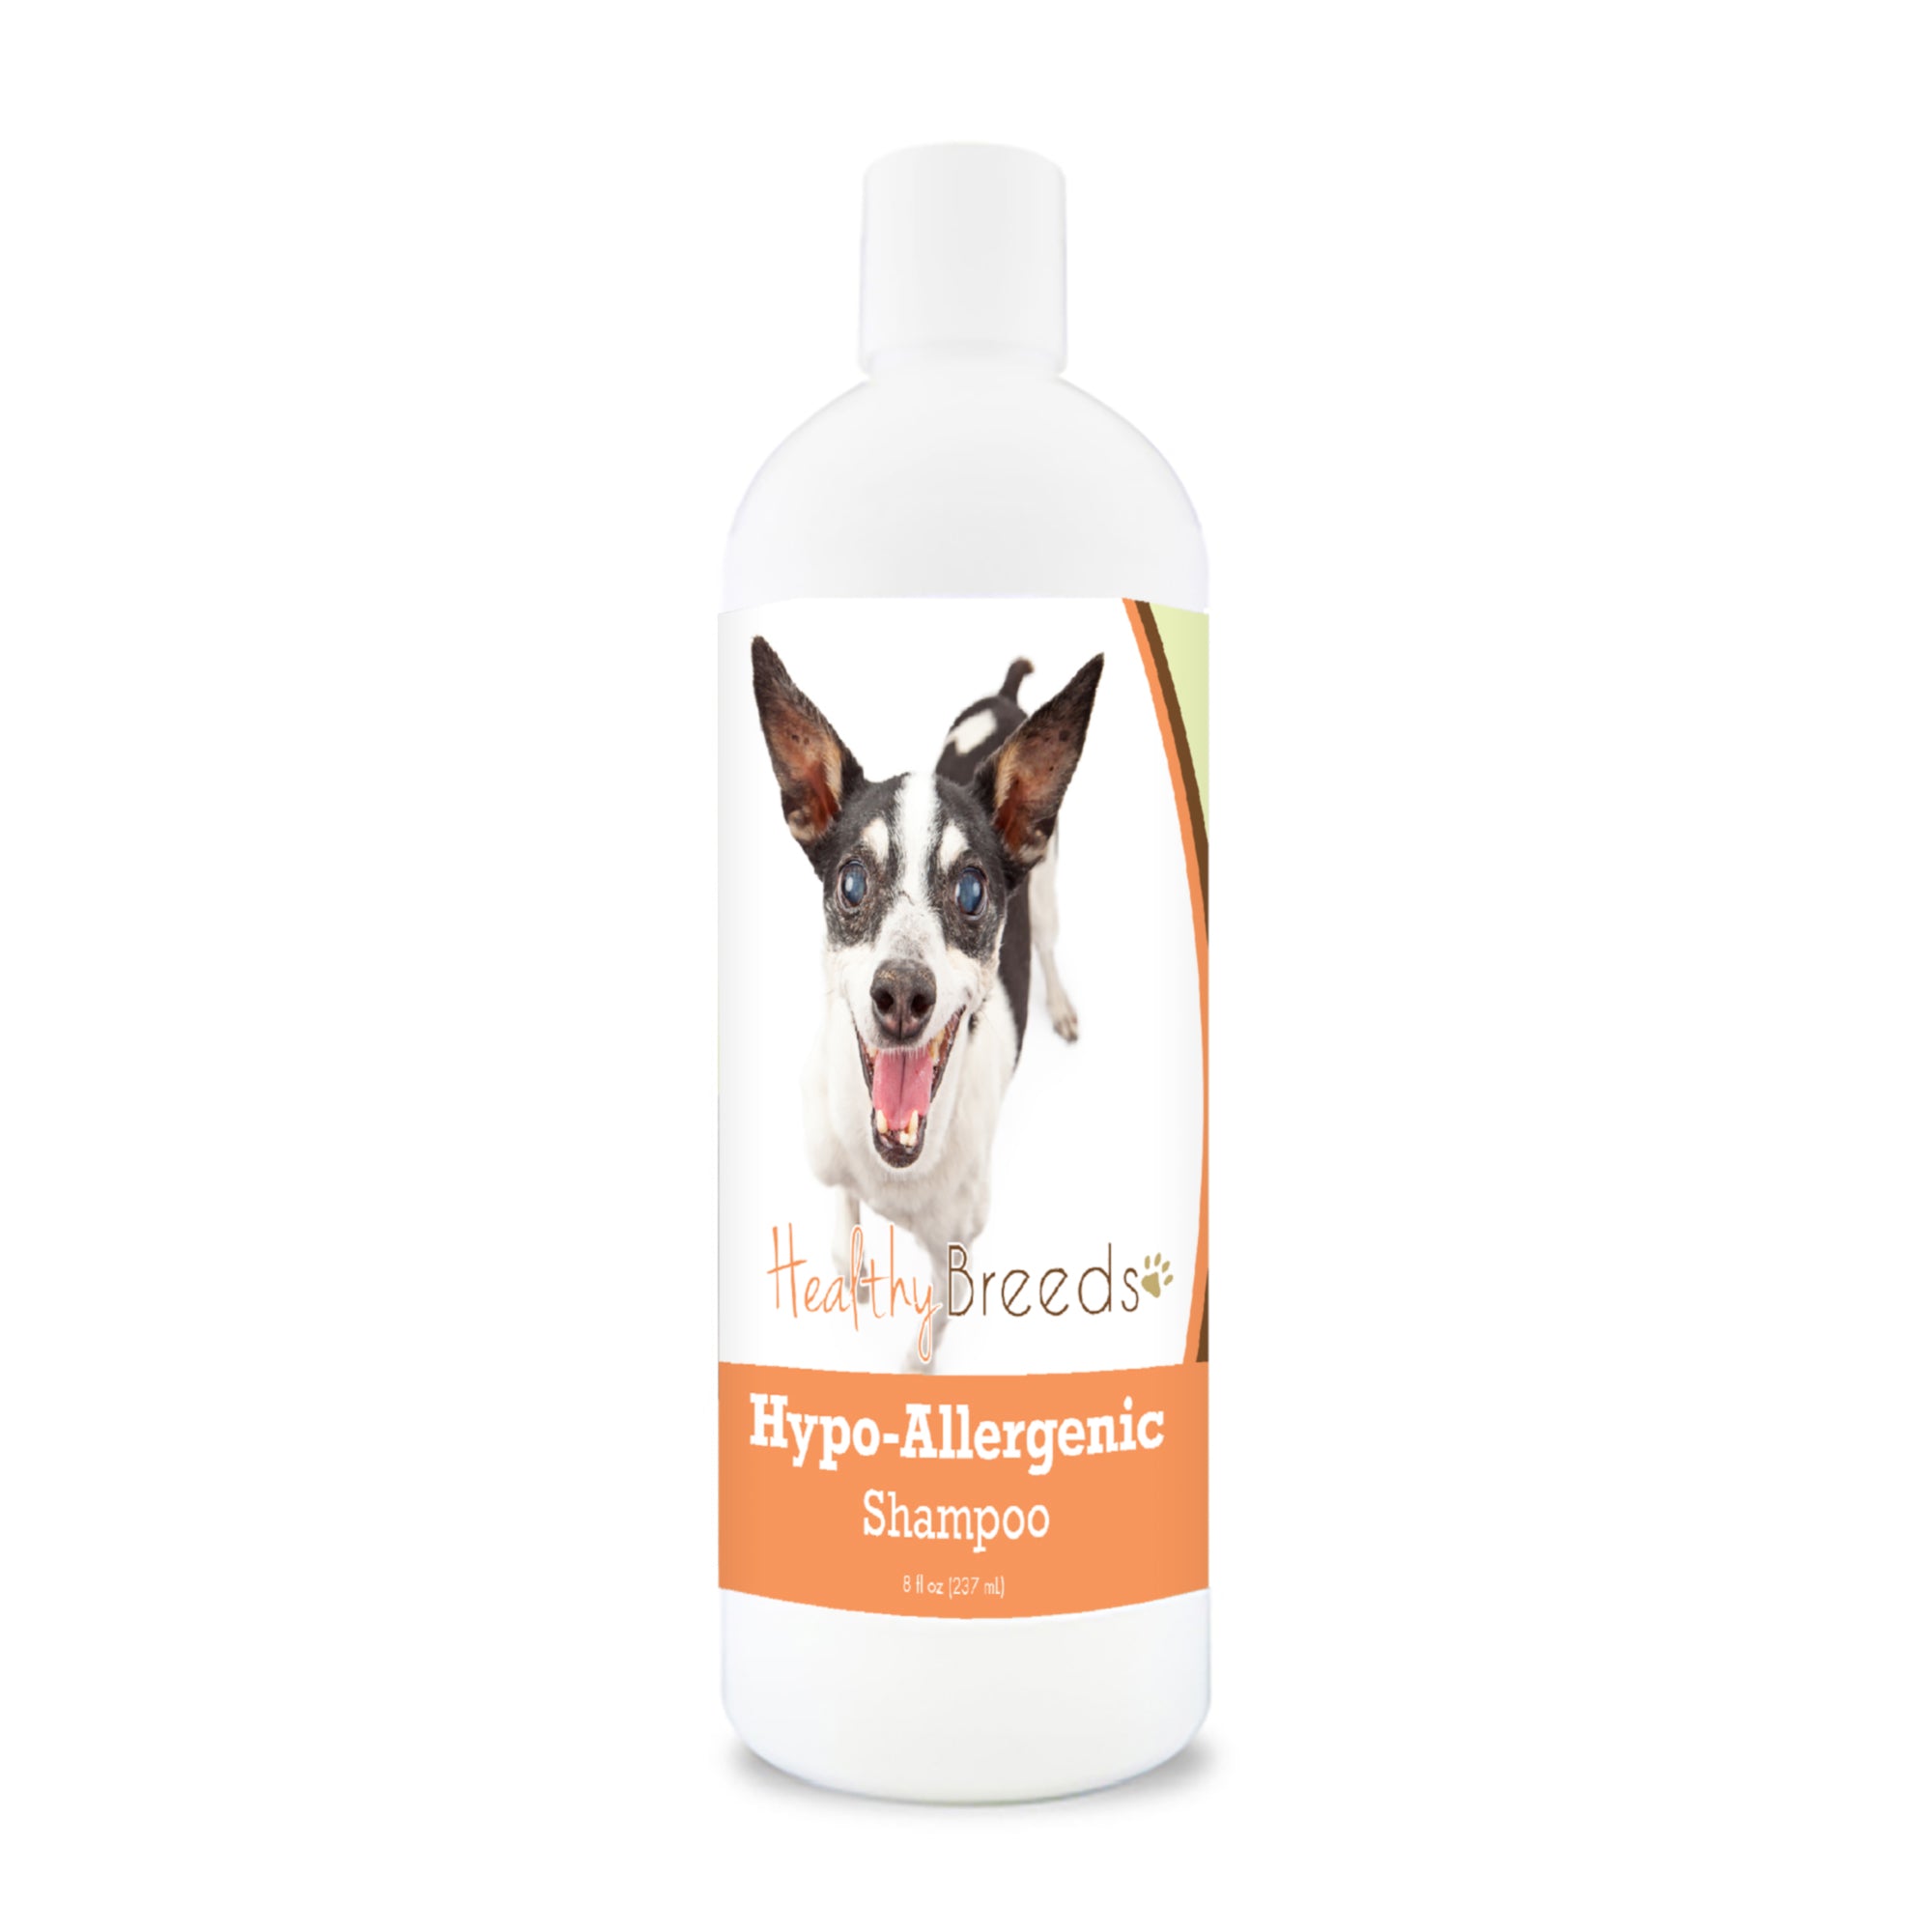 Rat Terrier Hypo-Allergenic Shampoo 8 oz